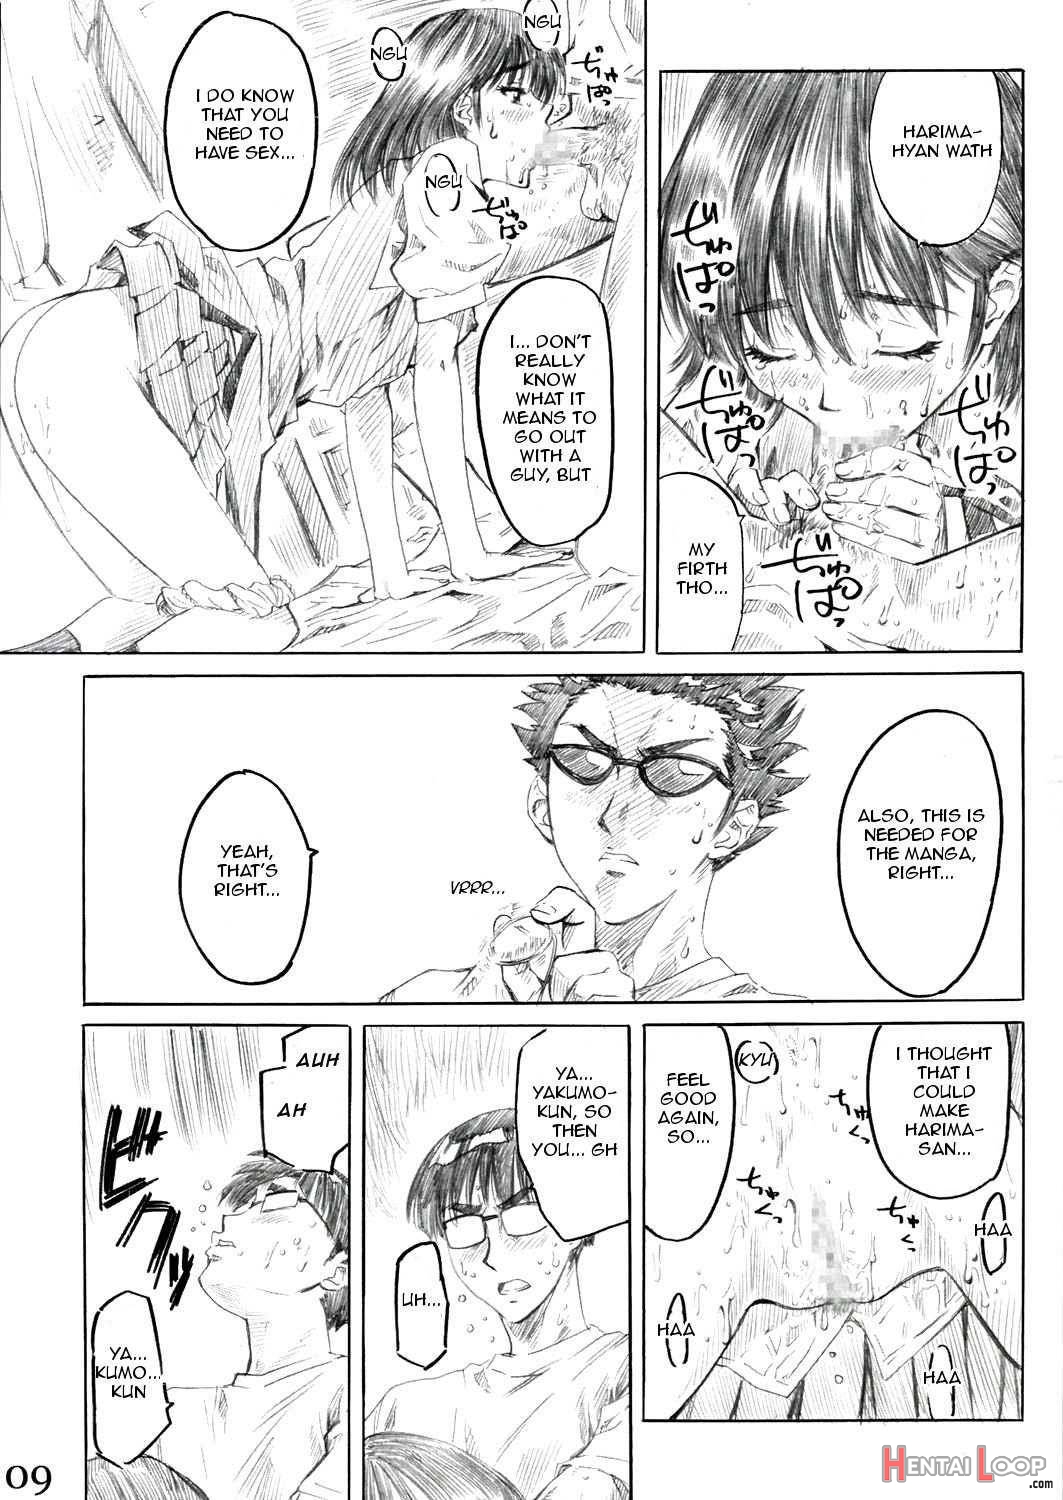 Harima no Manga Michi Vol.2 page 6